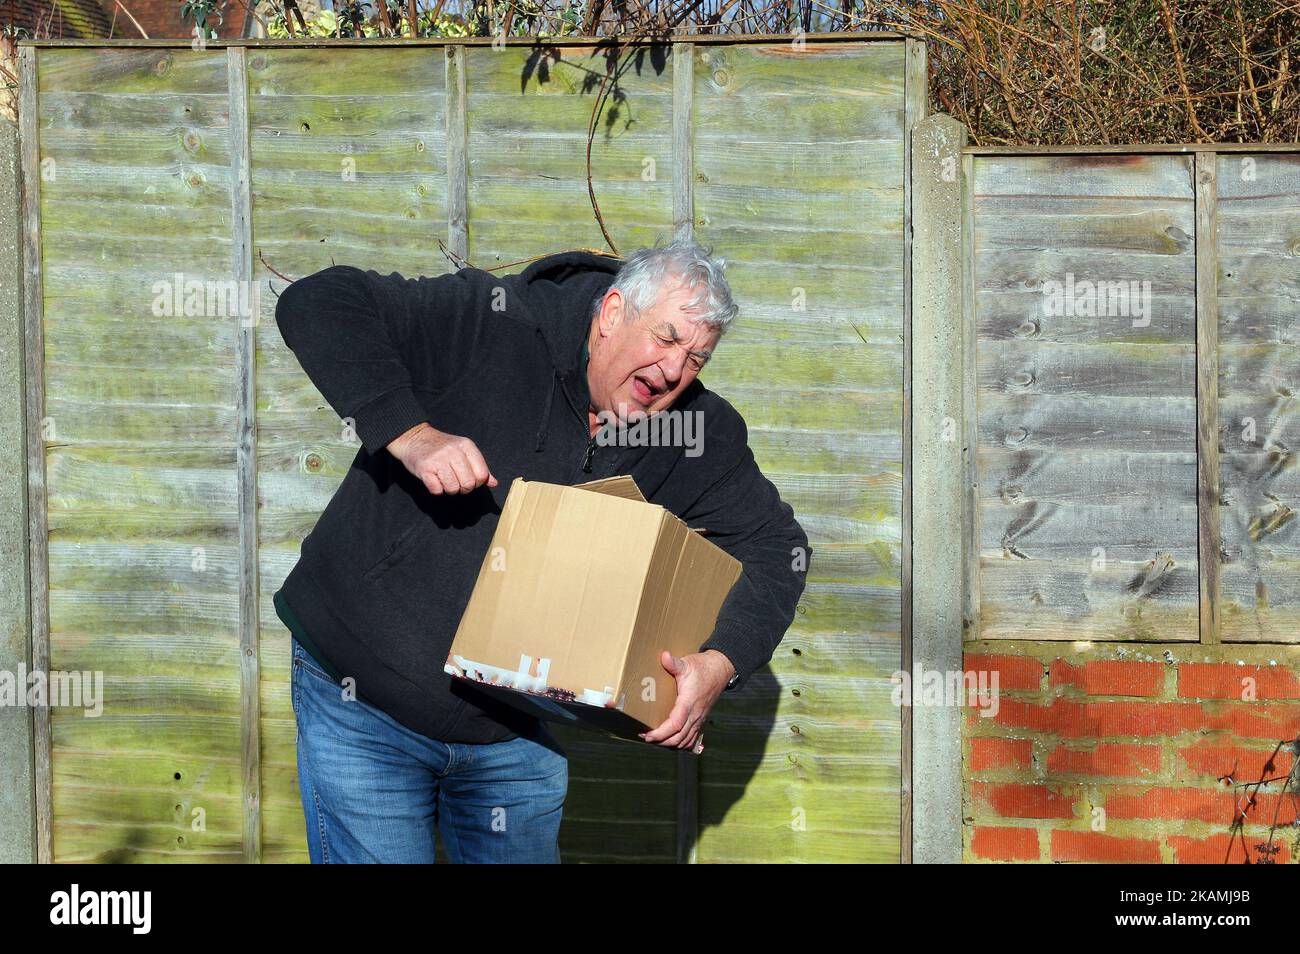 Uomo anziano o anziano che solleva una scatola pesante e si ferisce. Scatola troppo pesante o peso di sollevamento errato. Foto Stock